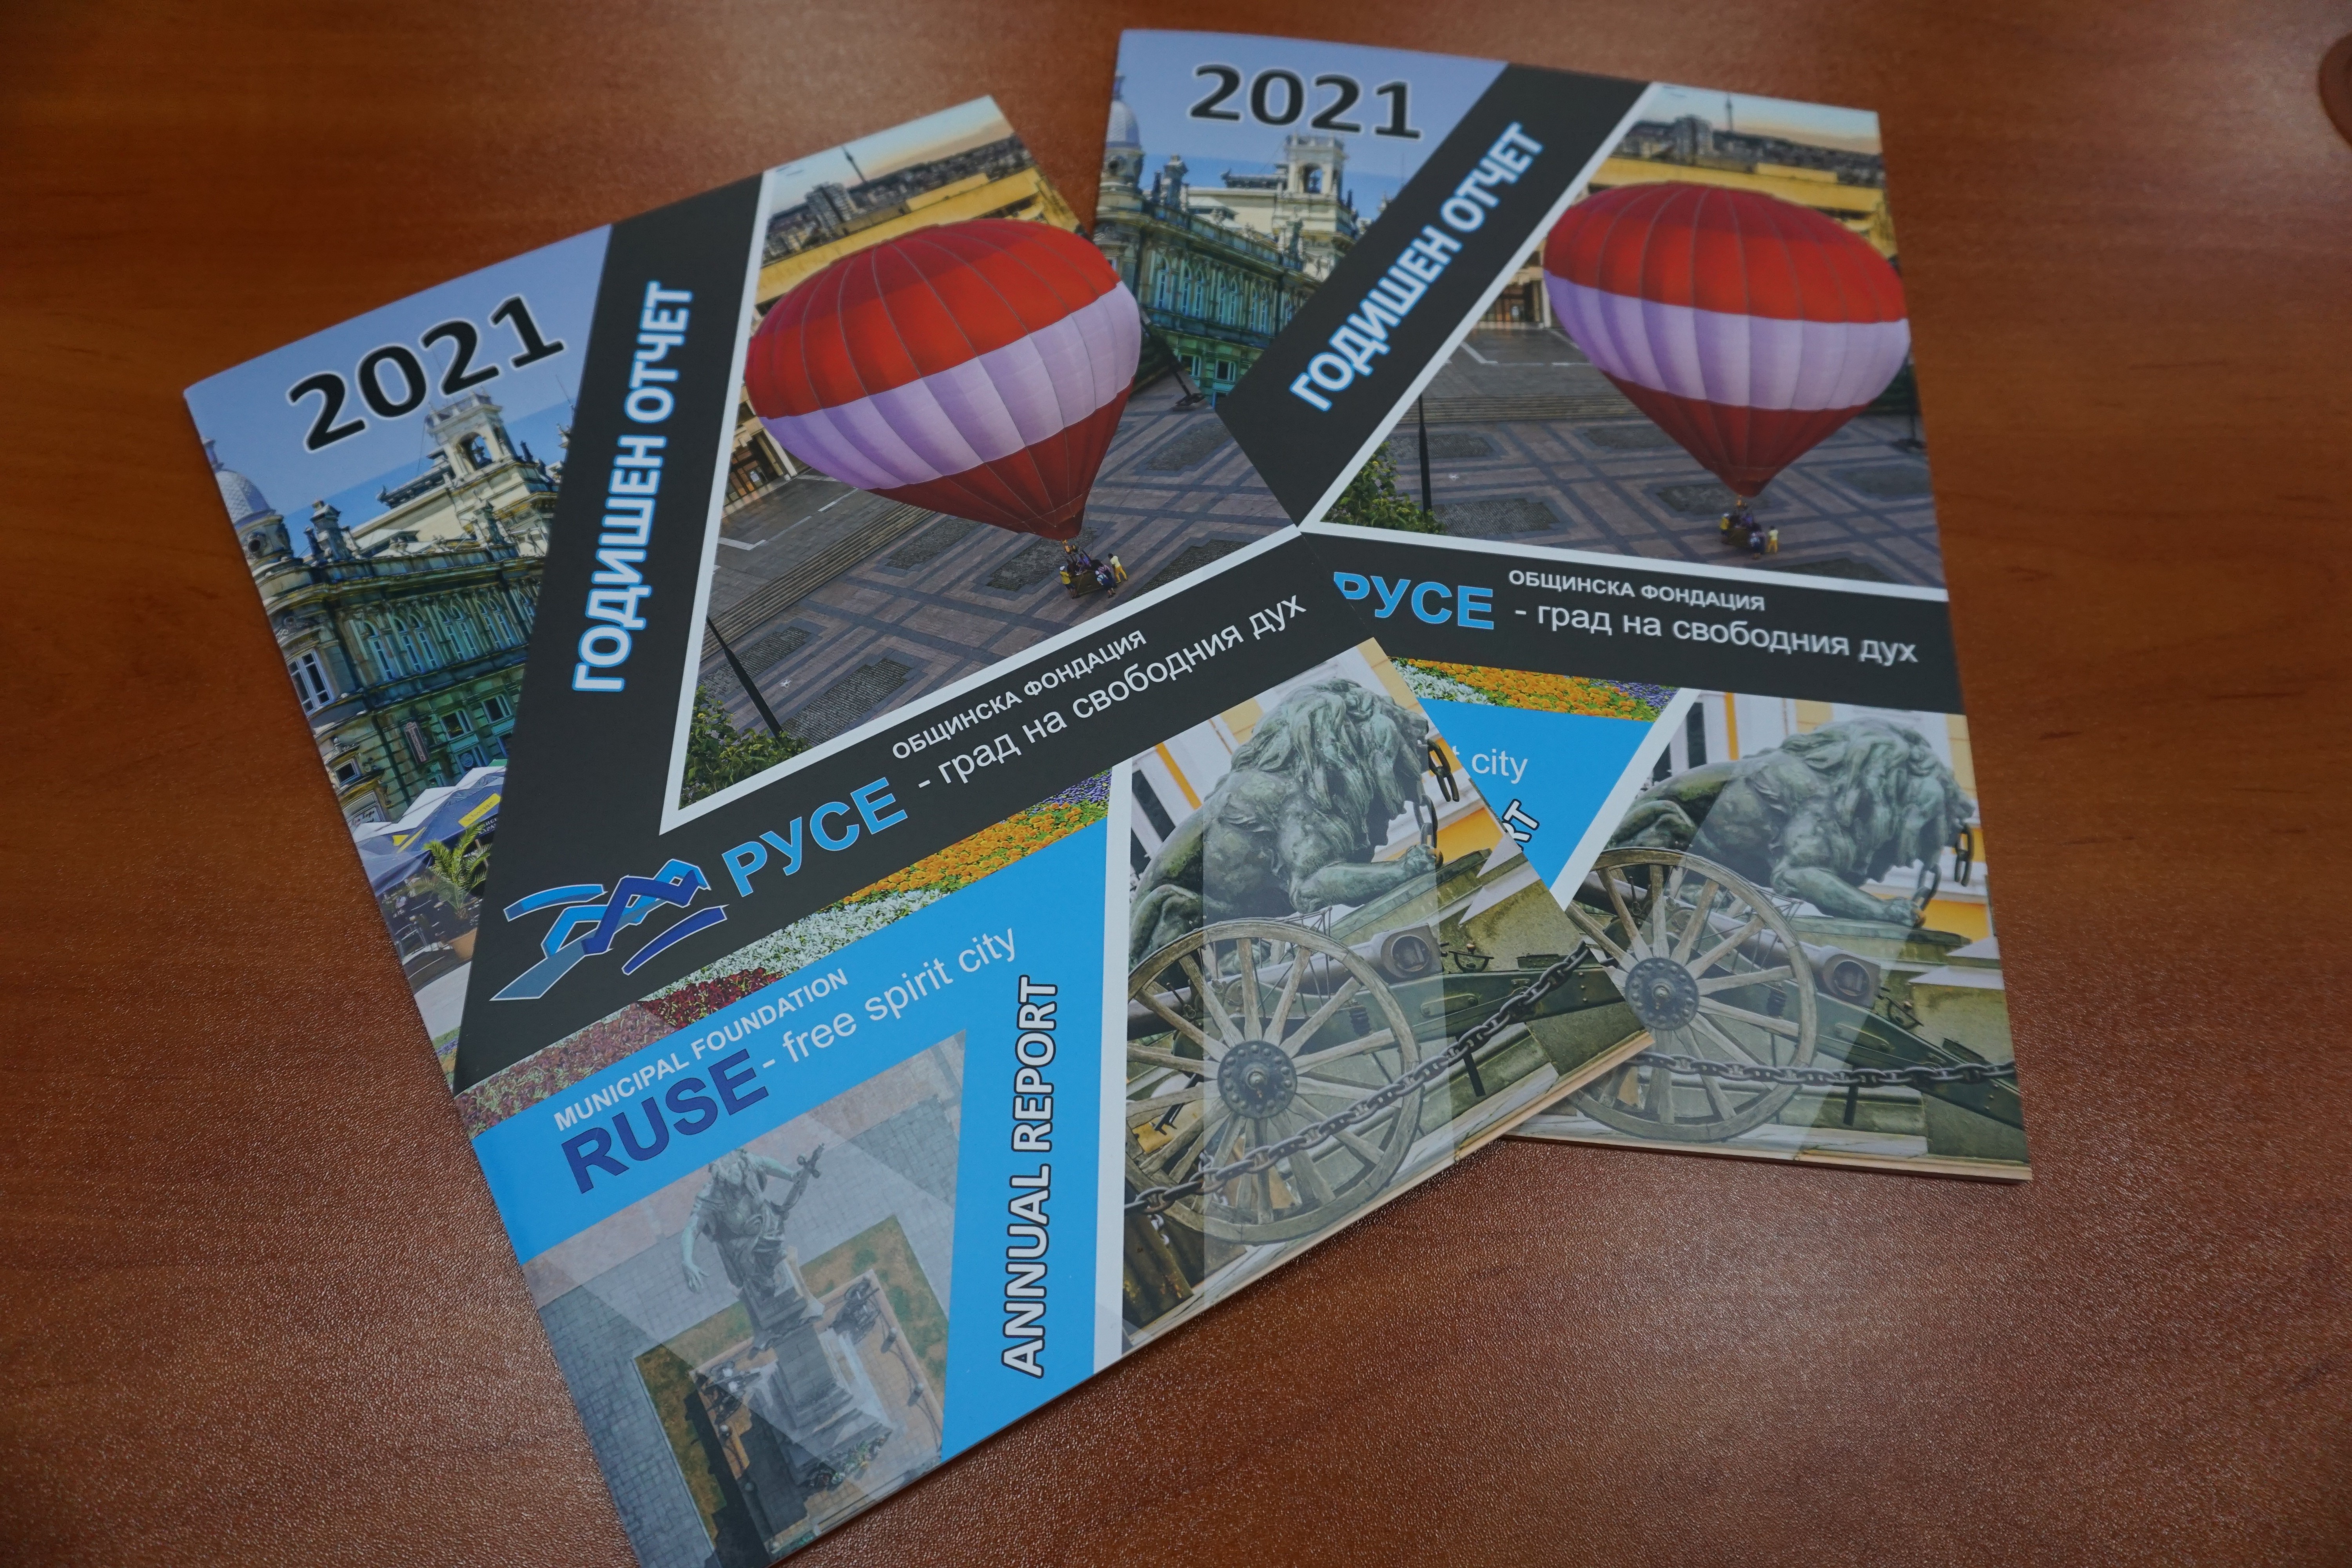 30 събития включва кампанията „Русе – град на свободния дух“ през 2022 г.